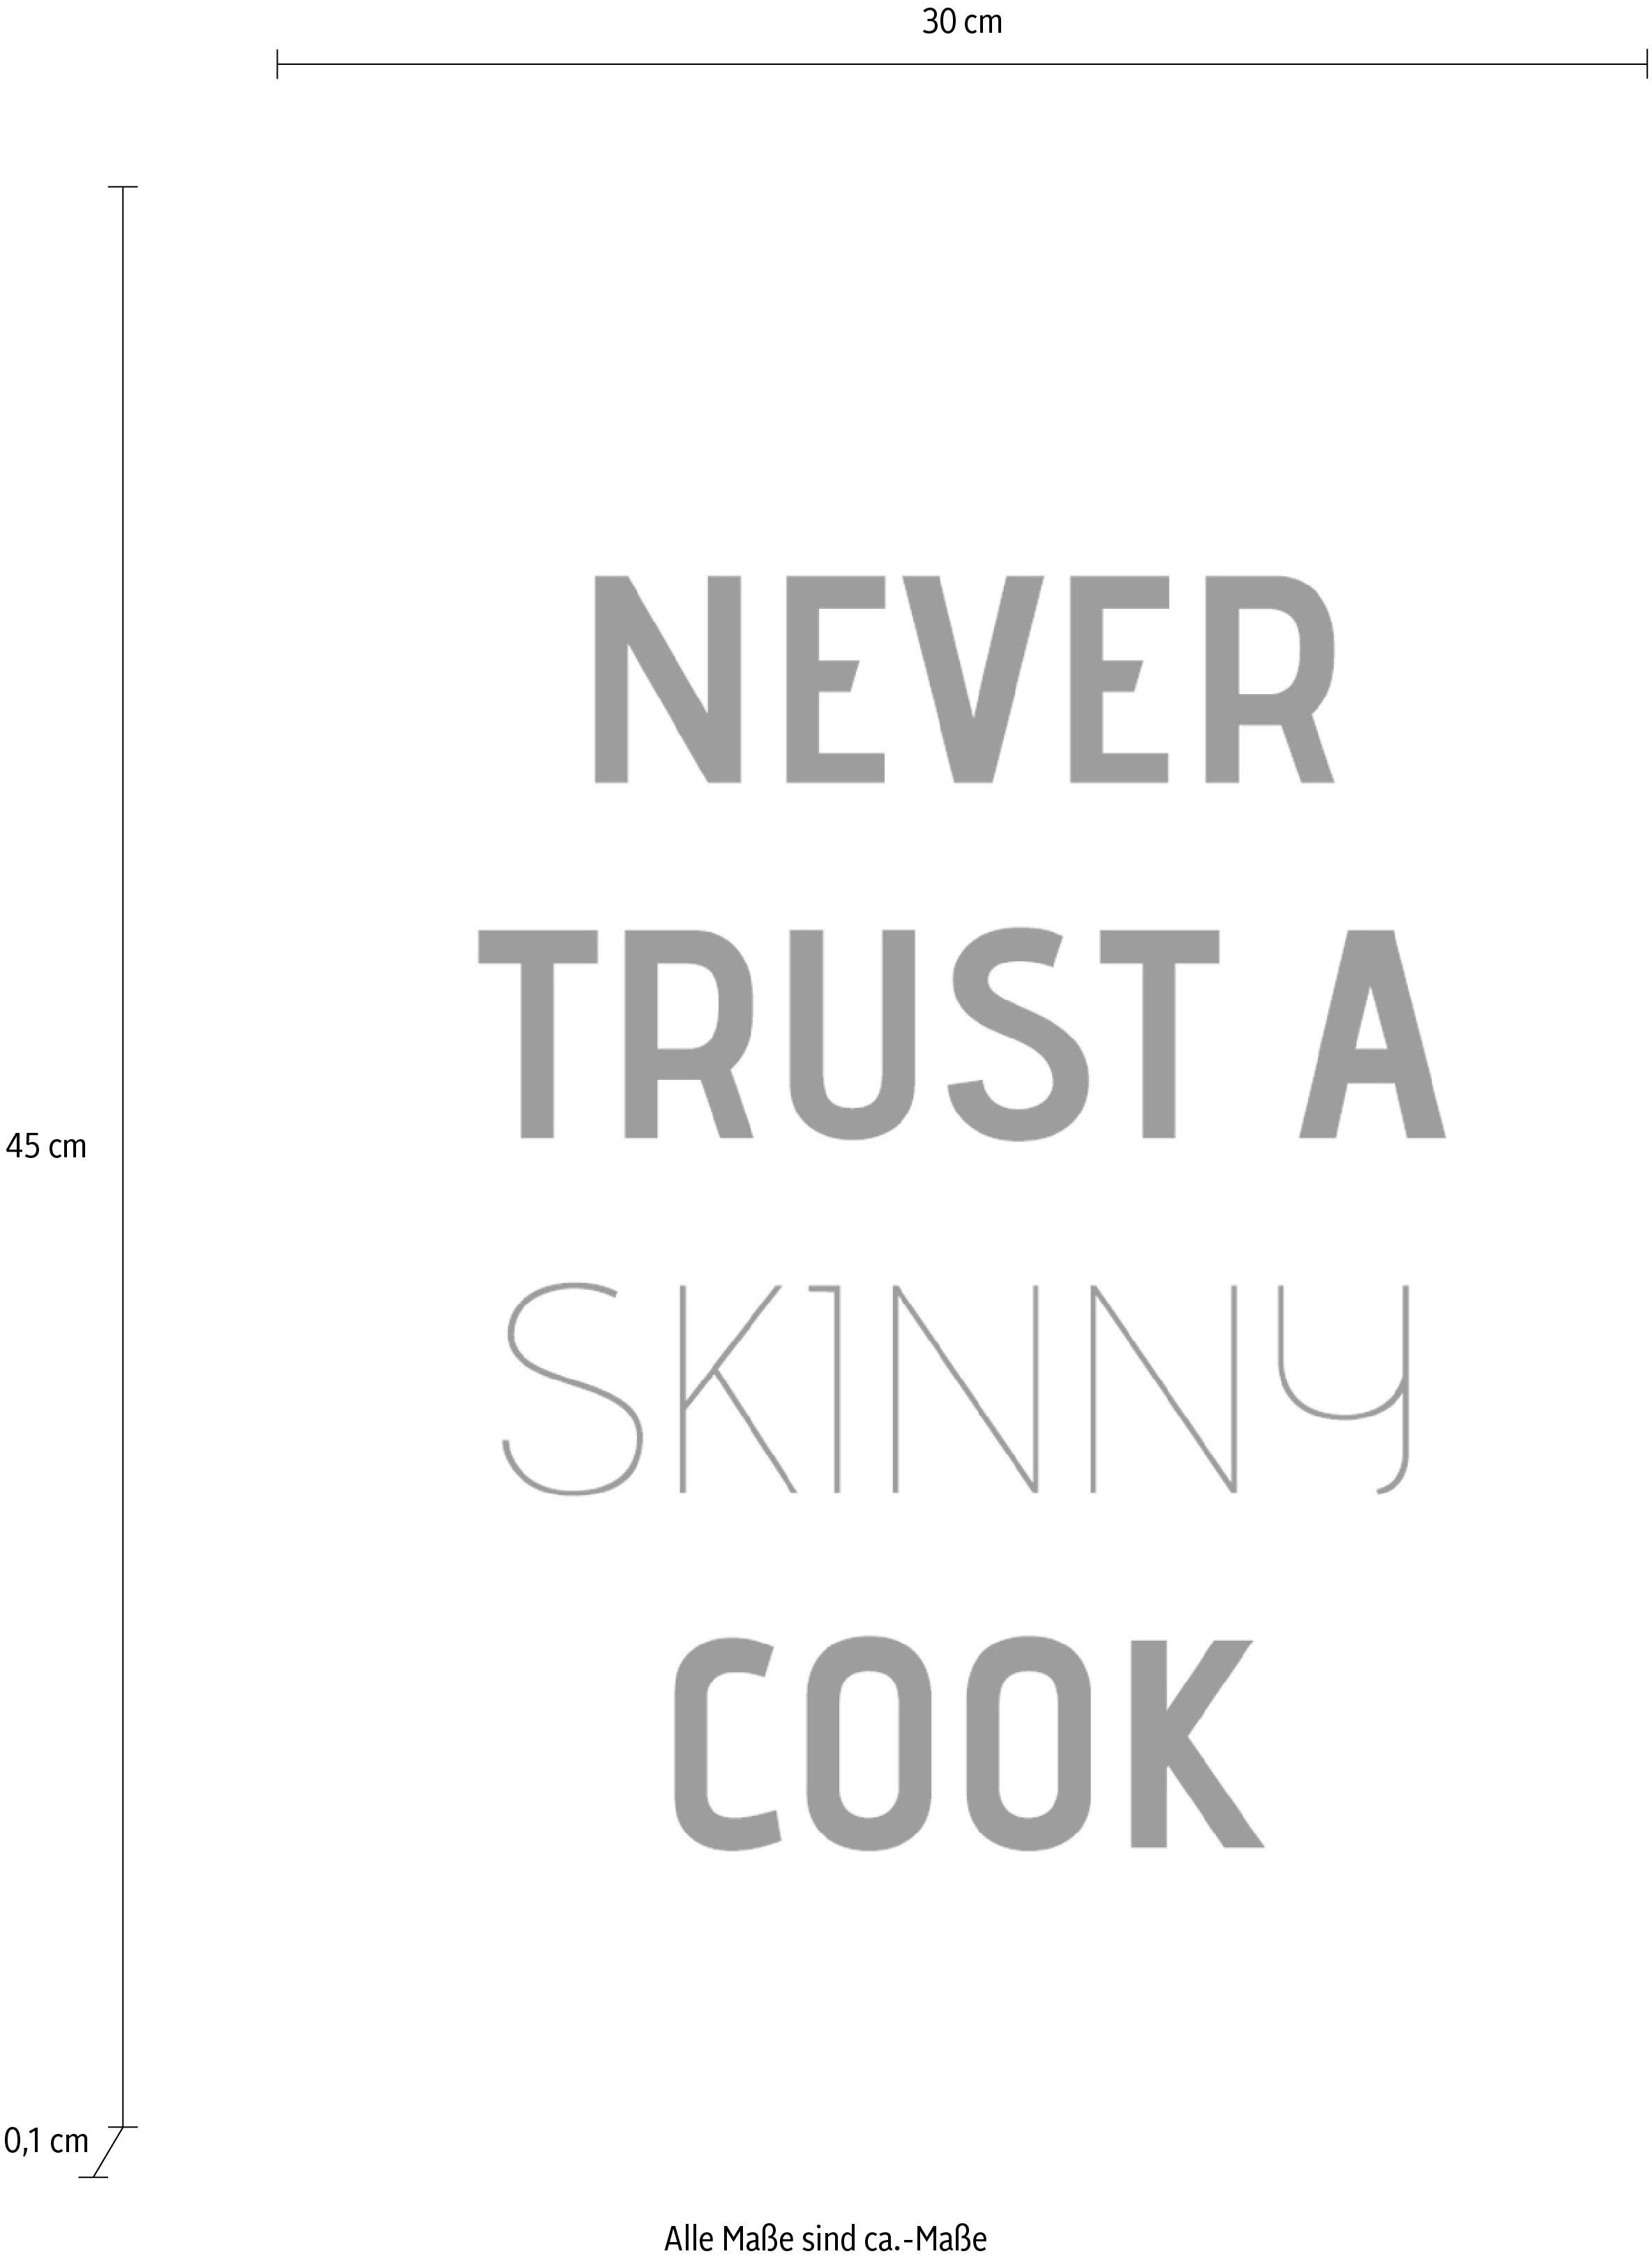 auf cook, Schriftzug Stahlblech Wanddekoobjekt queence trust skinny Never a